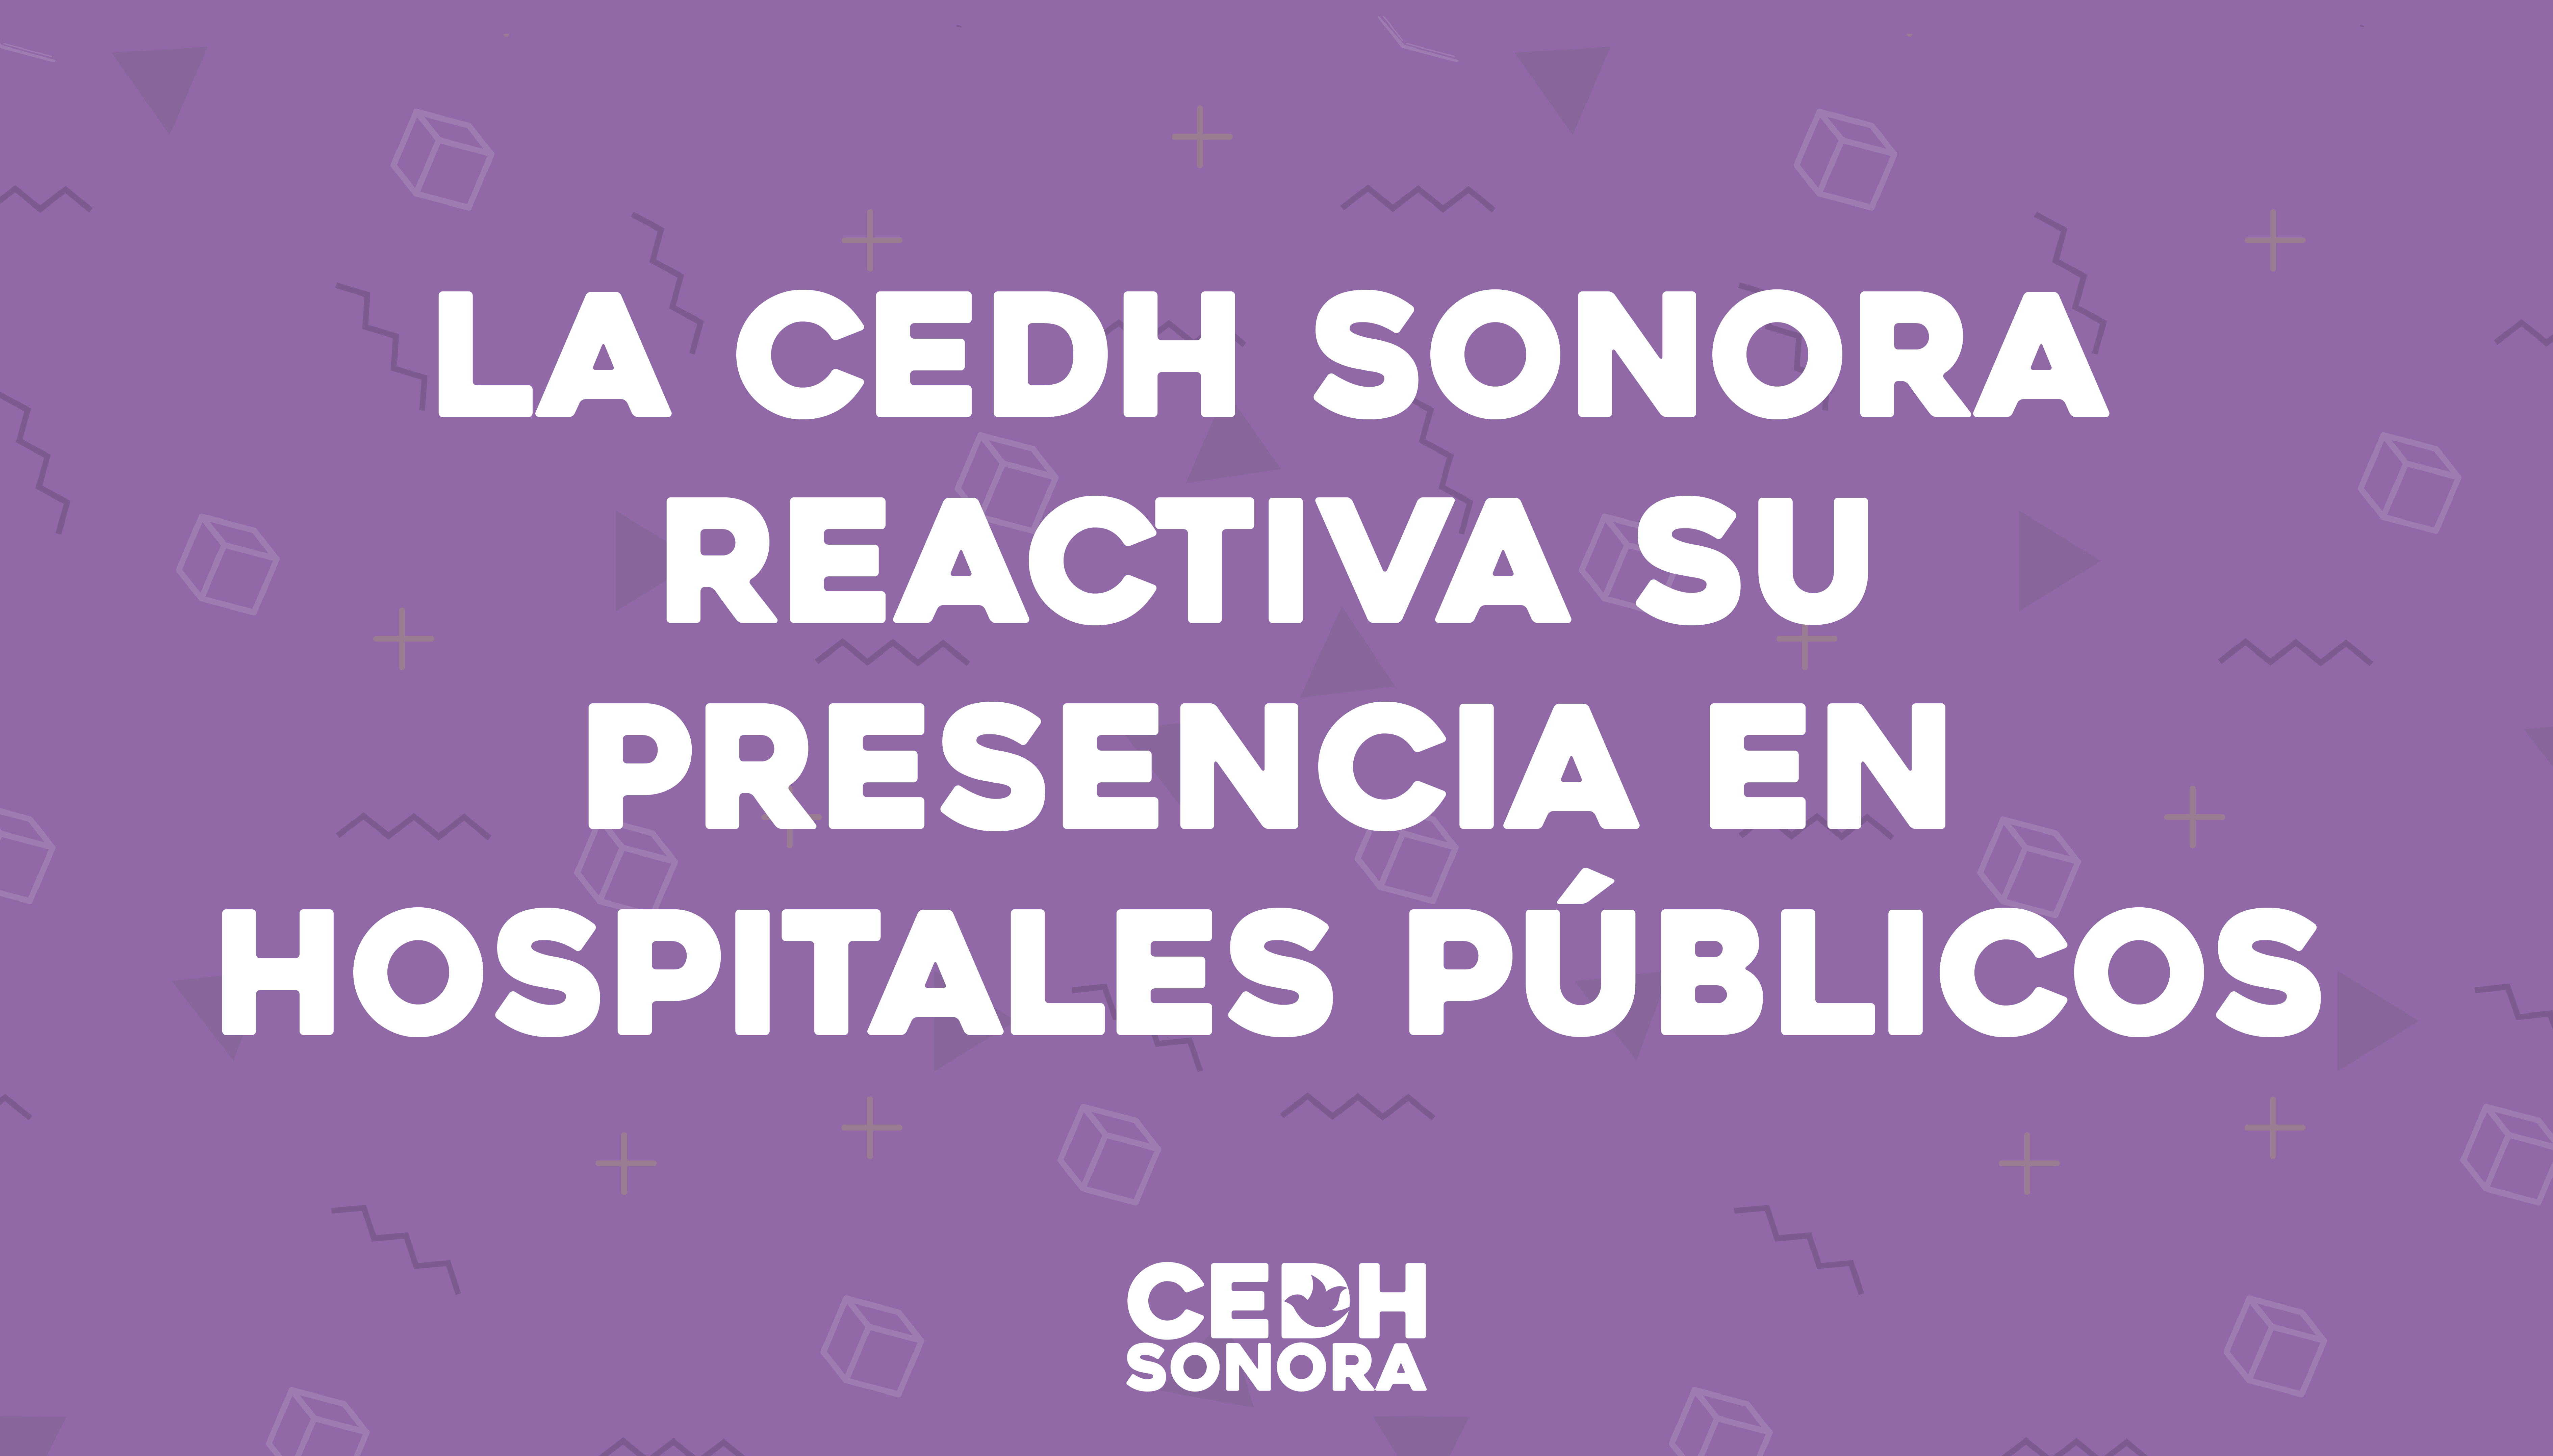 La CEDH Sonora reactiva su presencia en hospitales públicos